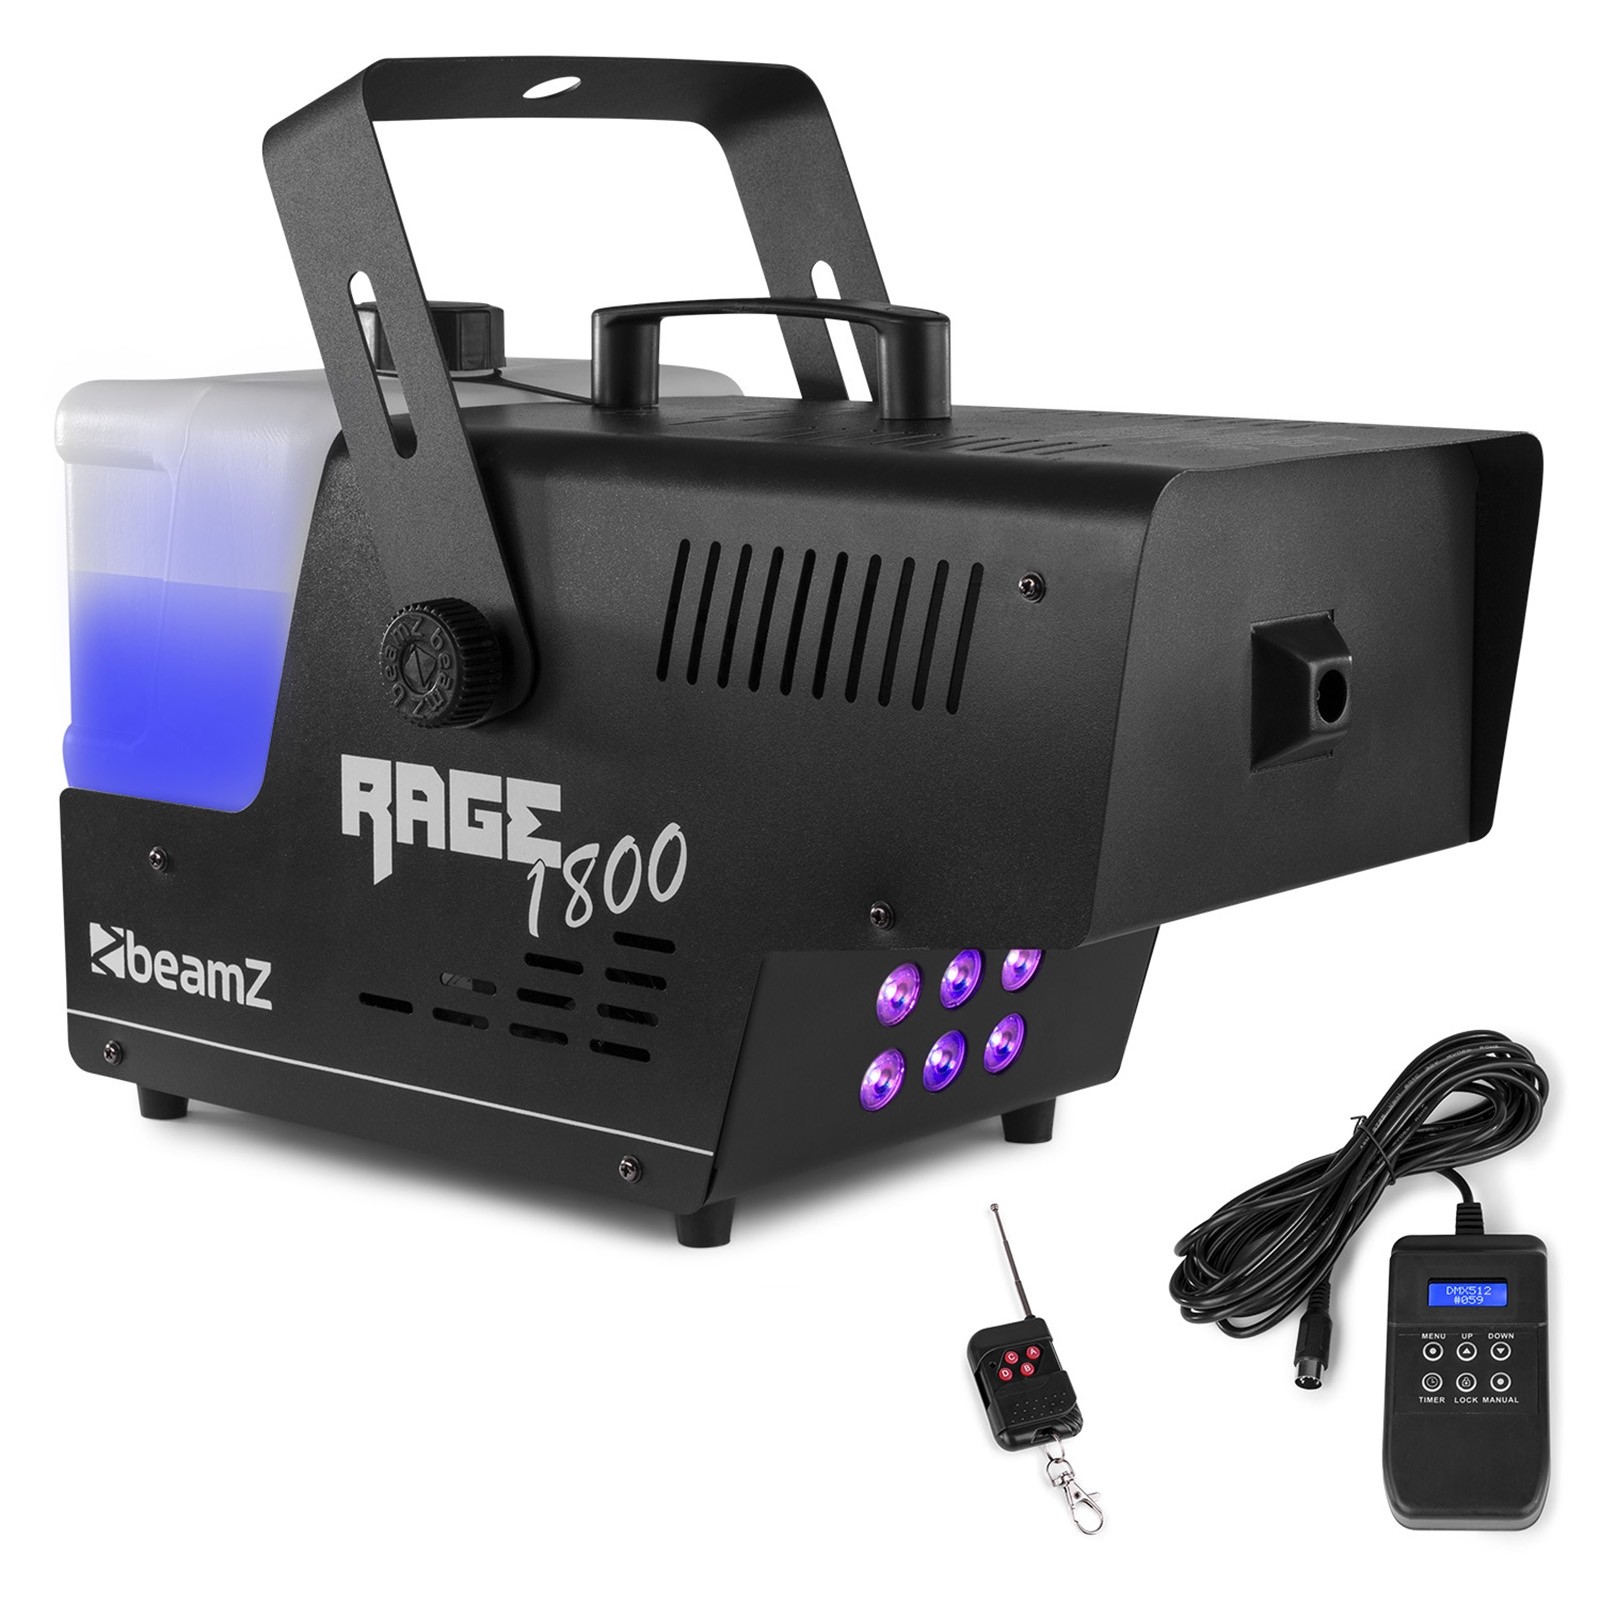 Rage 1800 LED Smoke machine